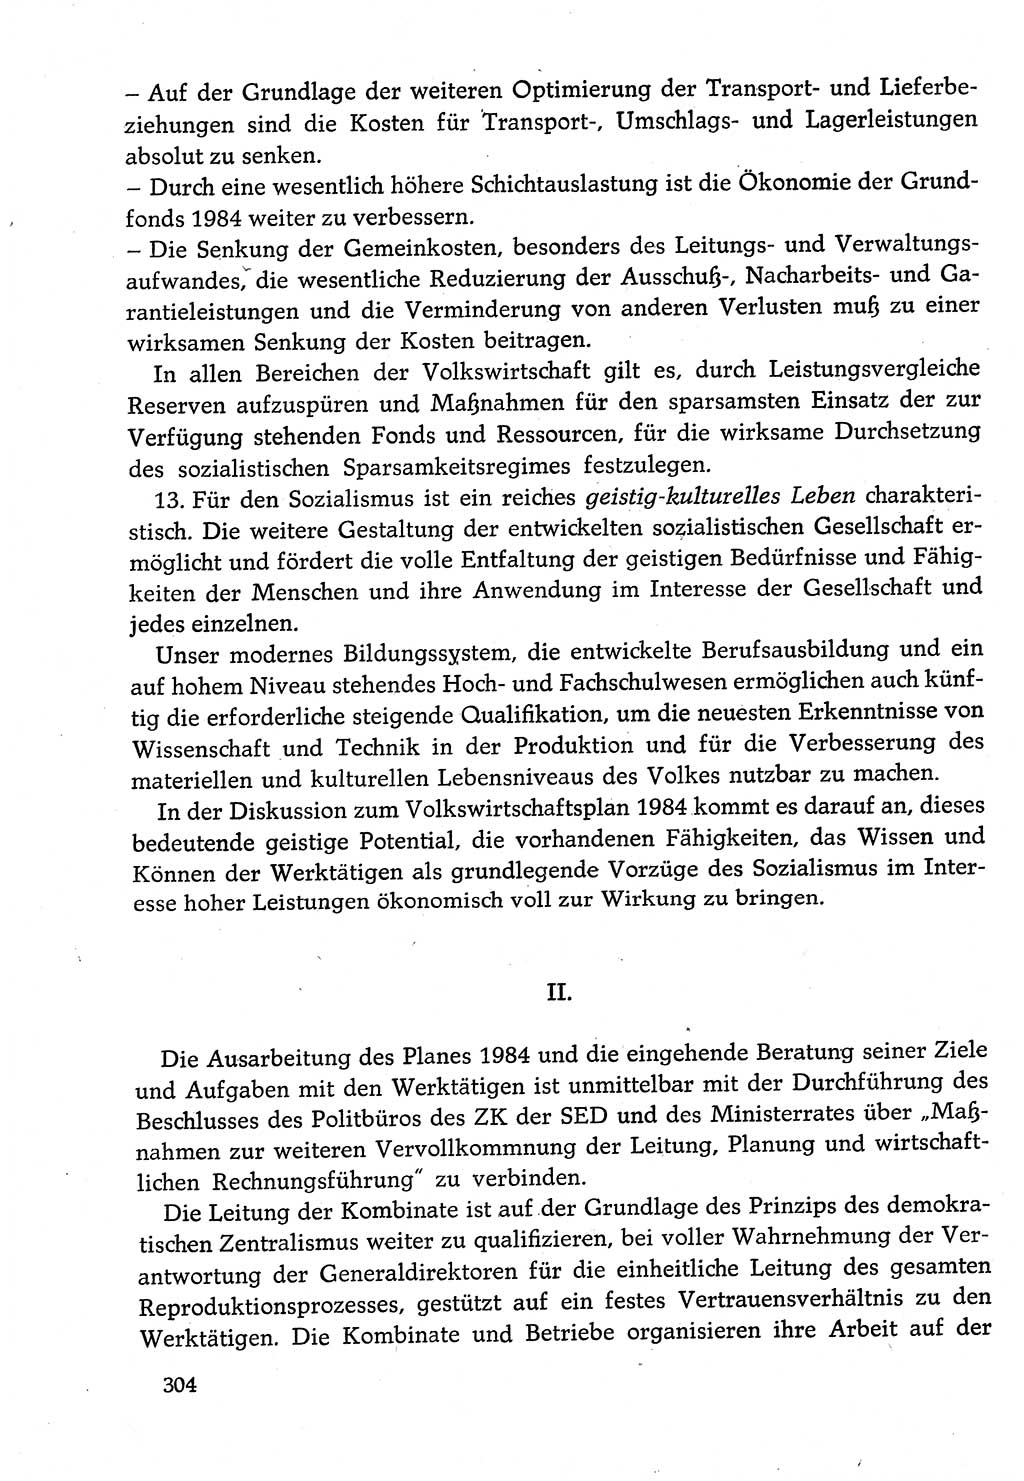 Dokumente der Sozialistischen Einheitspartei Deutschlands (SED) [Deutsche Demokratische Republik (DDR)] 1982-1983, Seite 304 (Dok. SED DDR 1982-1983, S. 304)